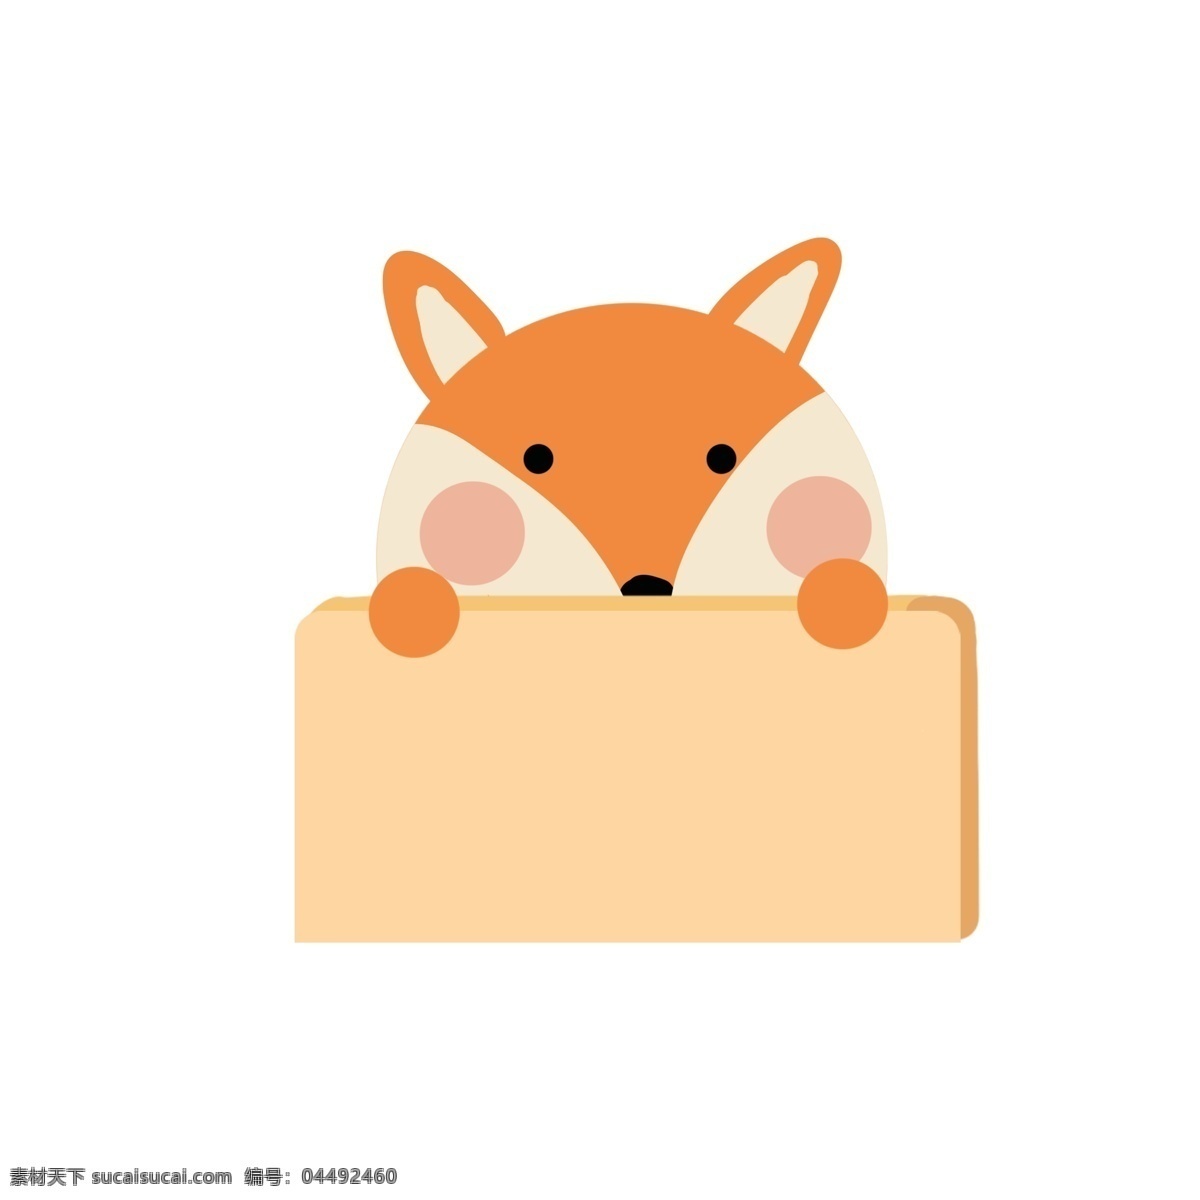 对话框 边框 气泡 框 卡通 动物 狐狸 矢量 商用 元素